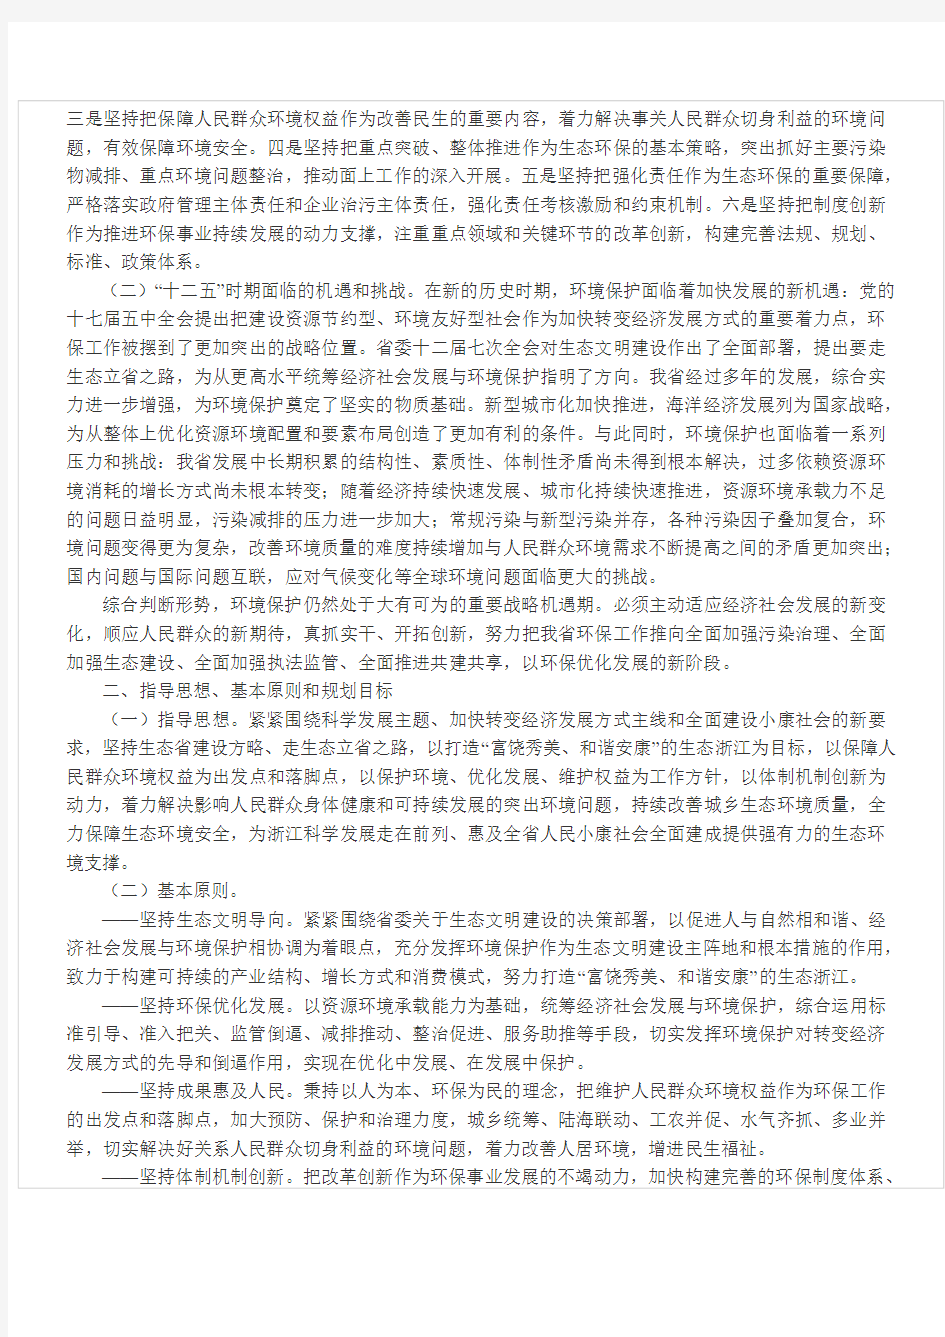 浙江省人民政府关于印发浙江省环境保护十二五规划的通知